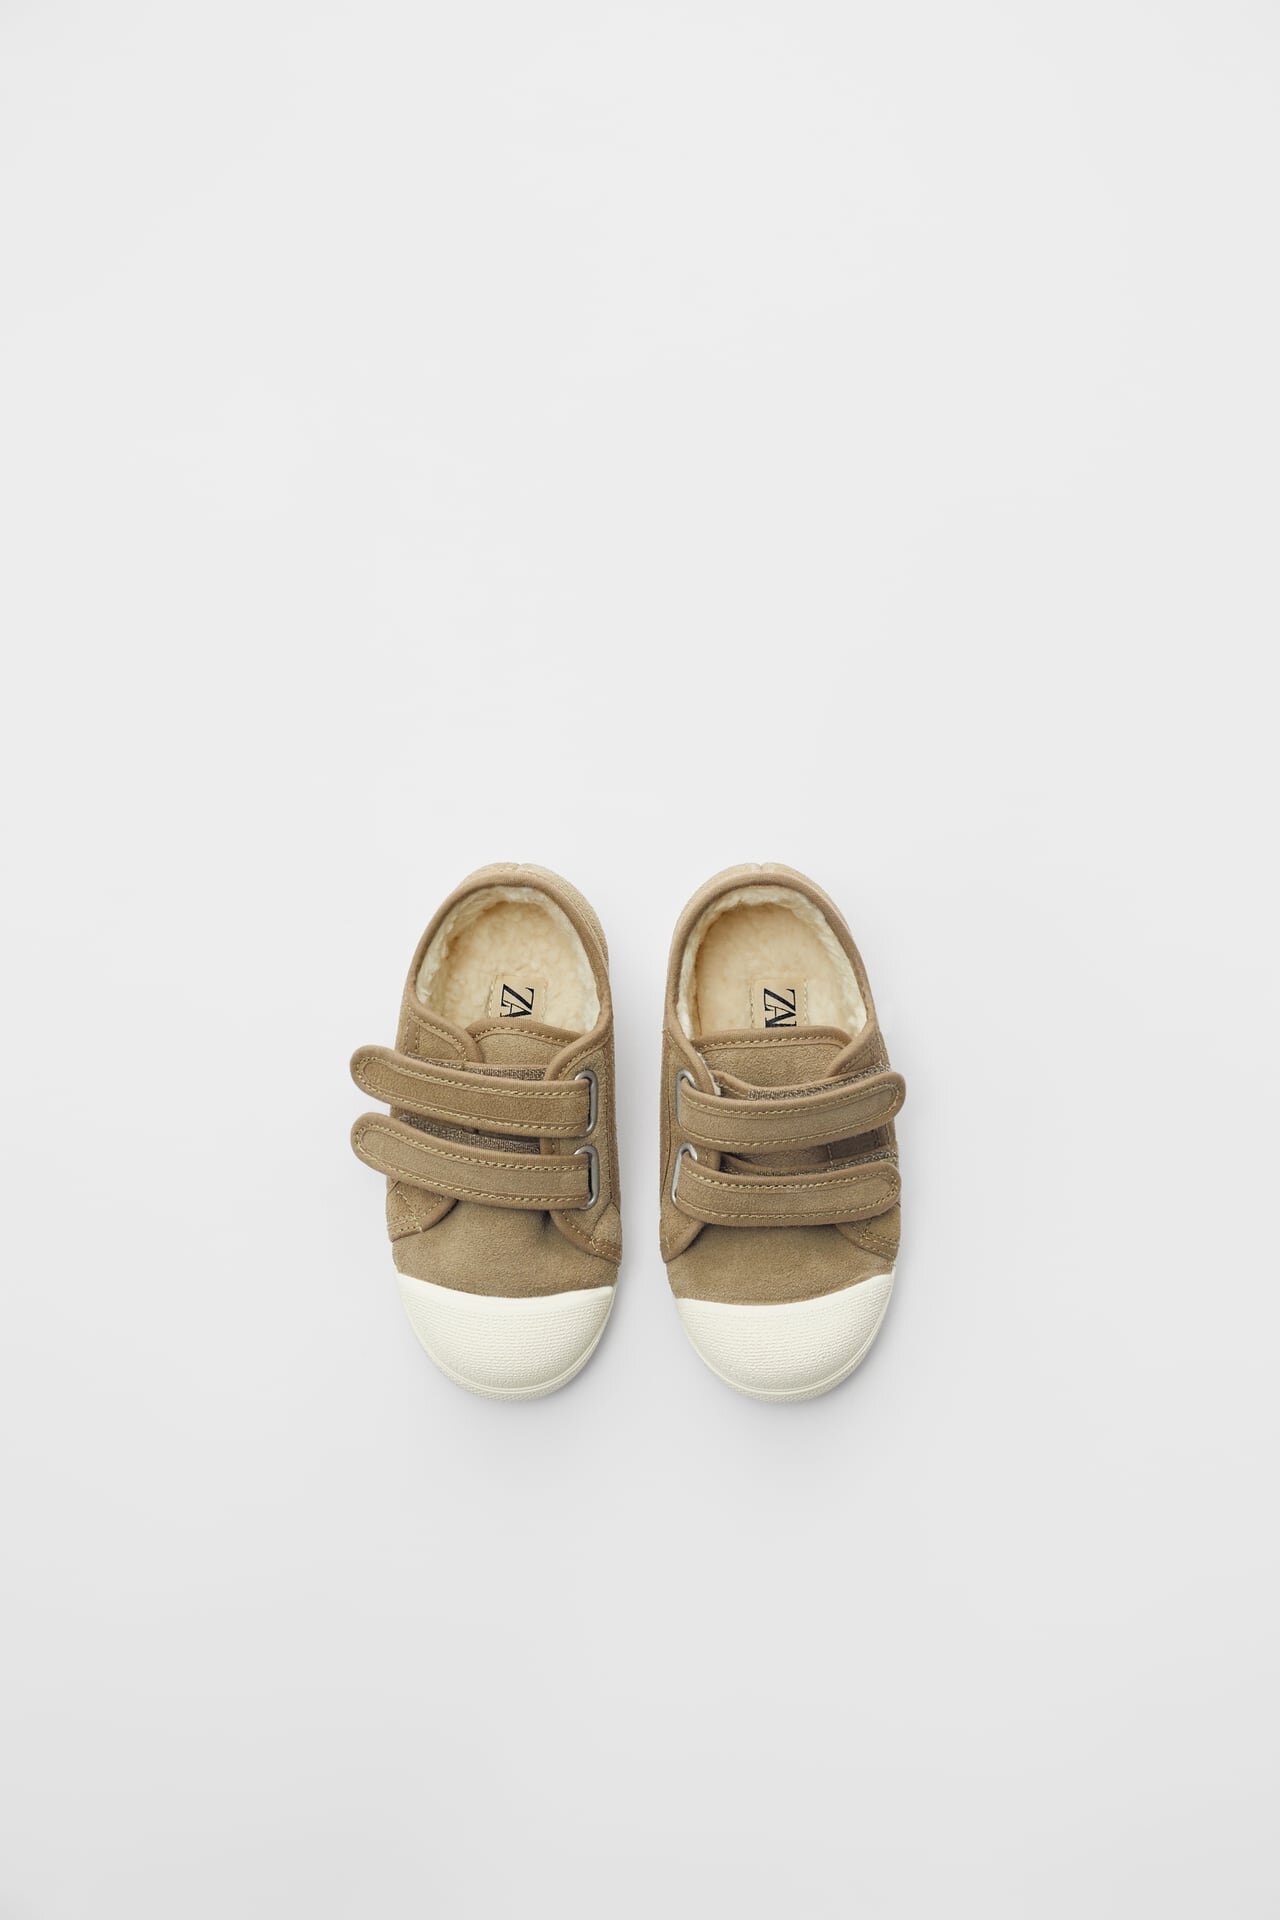 $35 | Sneakers